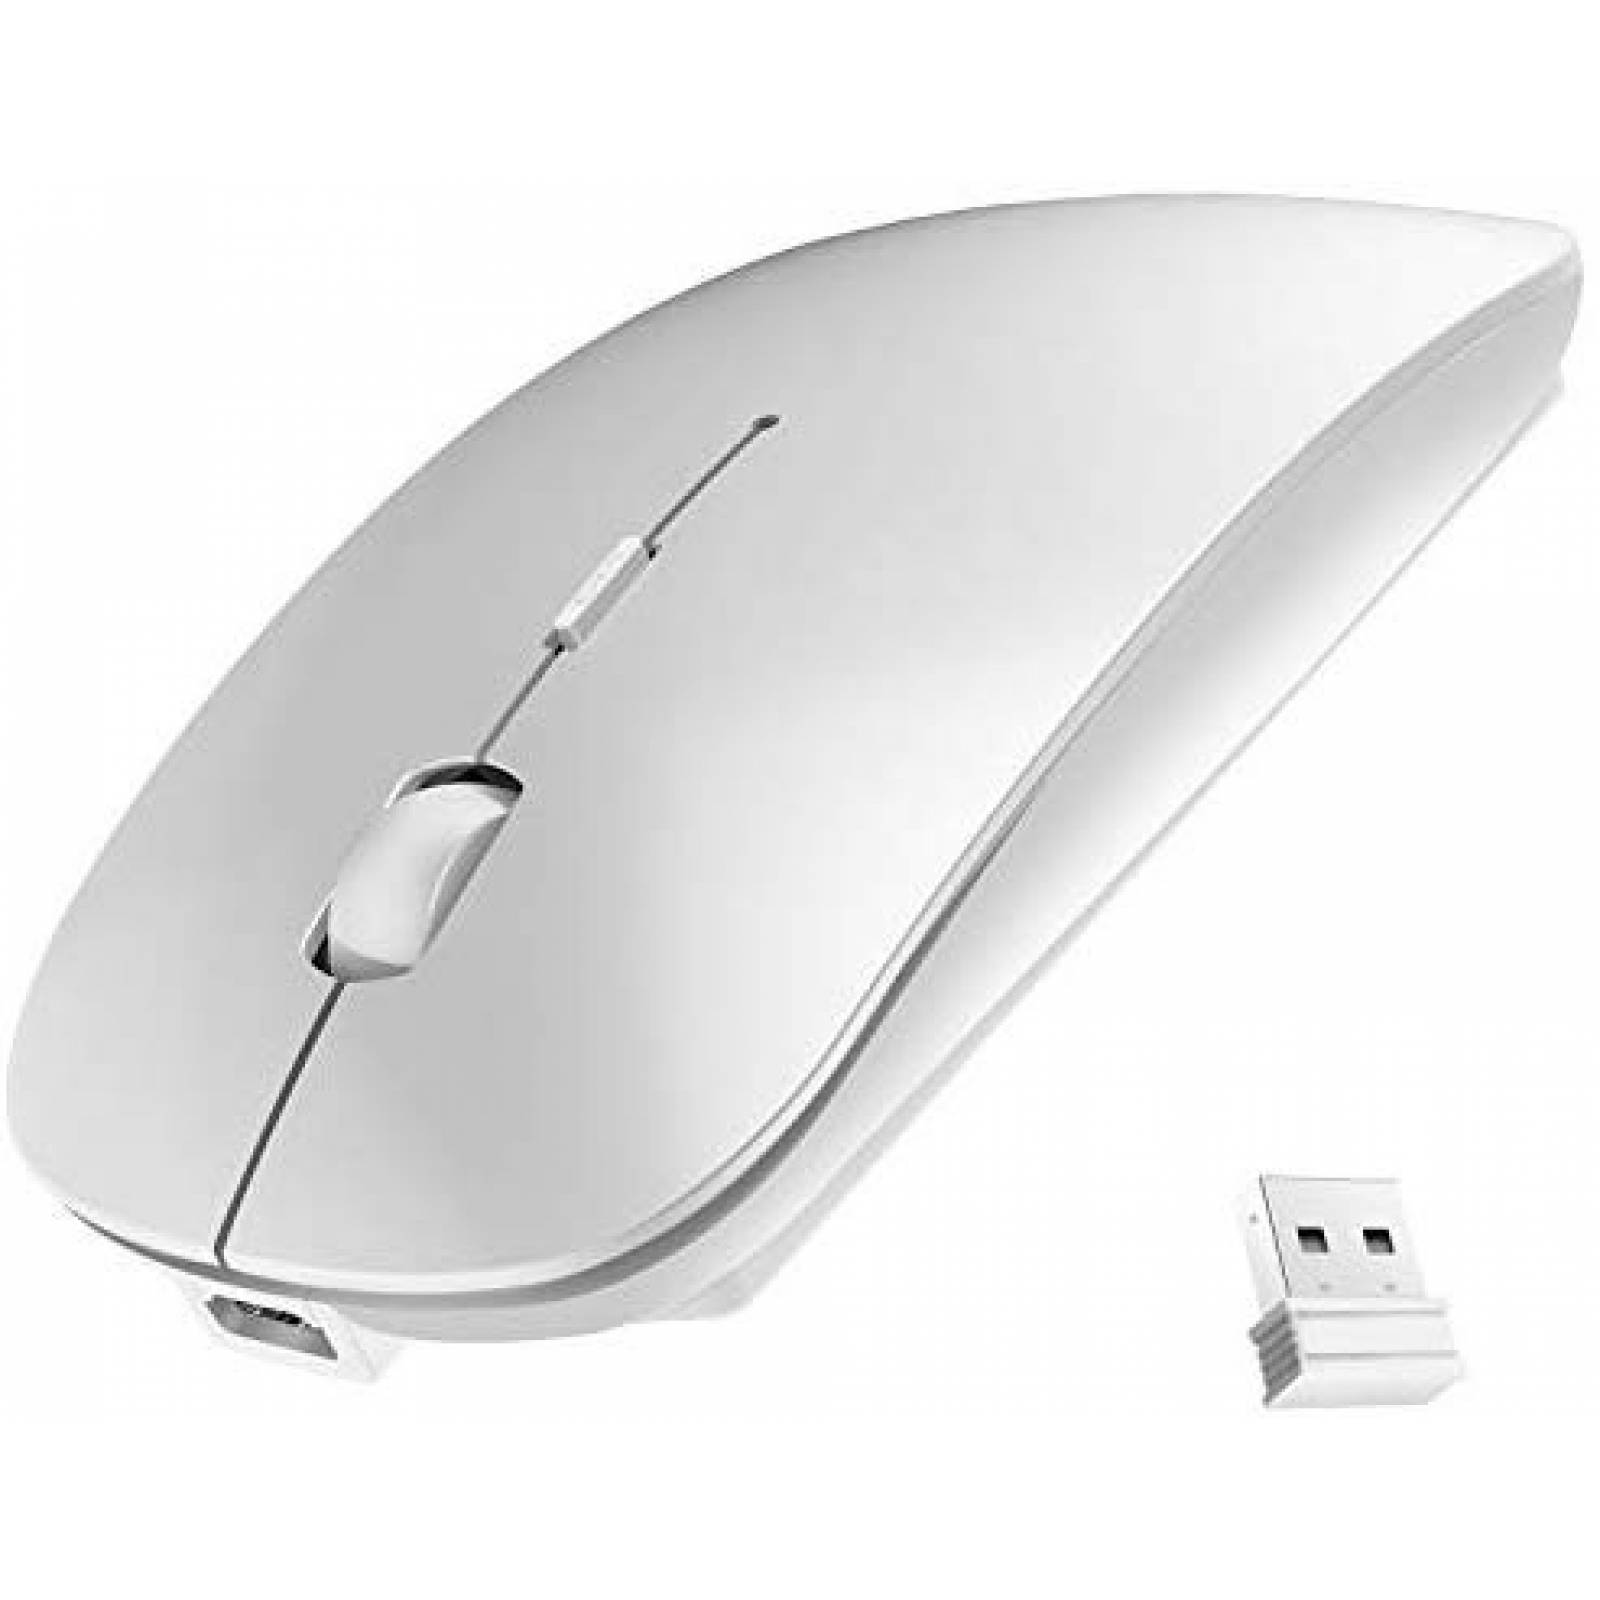 Mouse inalámbrico leibaolong 2.4GHz USB recargable -Plata